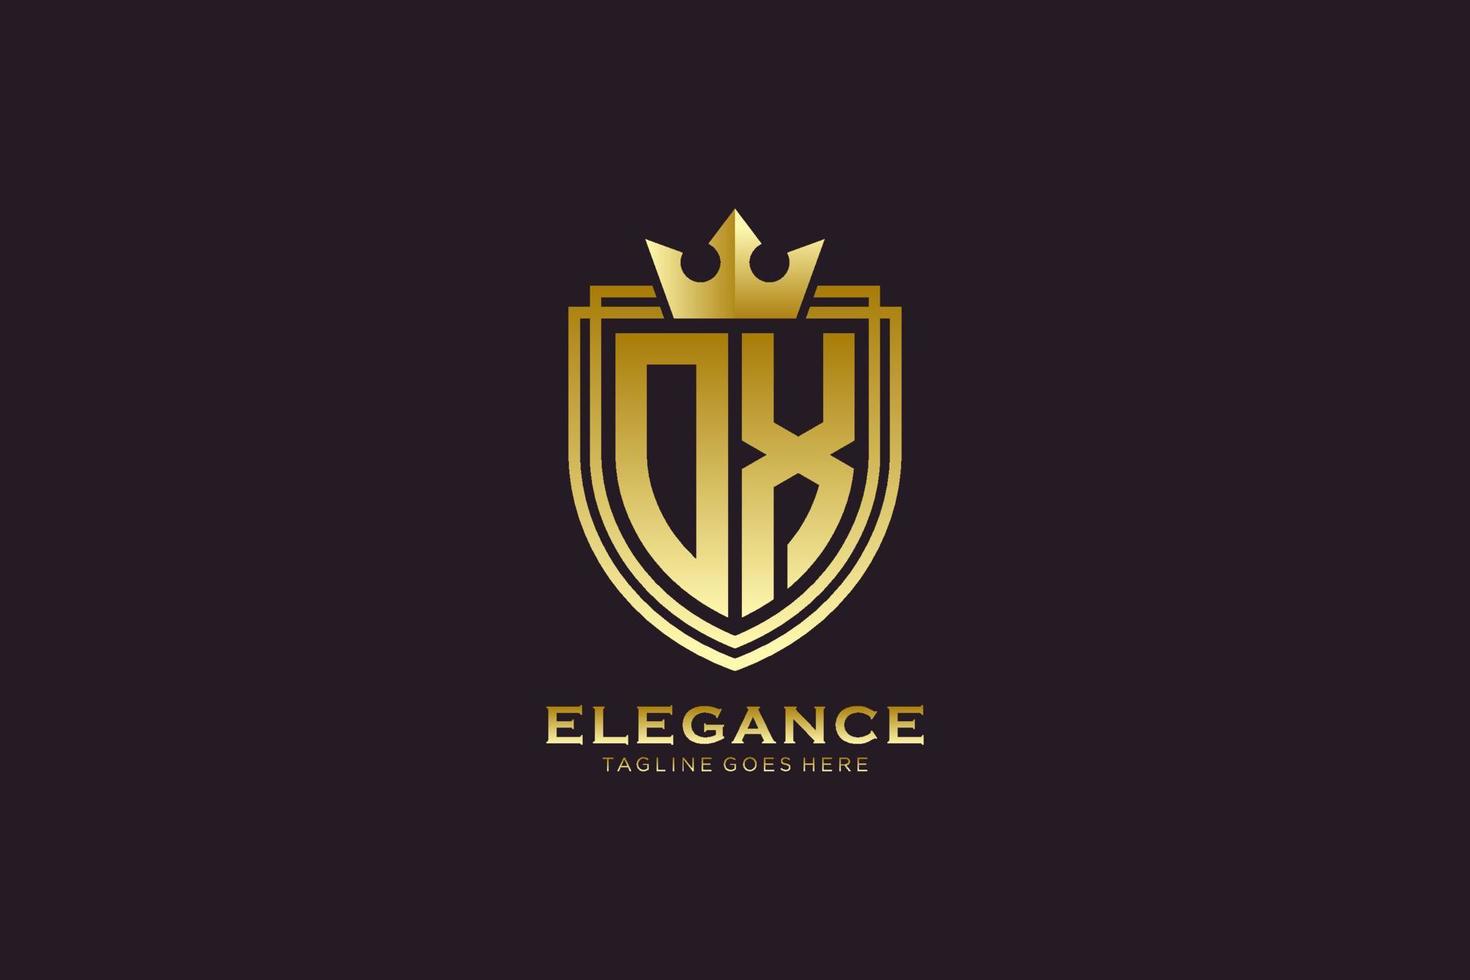 anfänglicher Ochse elegantes Luxus-Monogramm-Logo oder Abzeichen-Vorlage mit Schriftrollen und königlicher Krone - perfekt für luxuriöse Branding-Projekte vektor